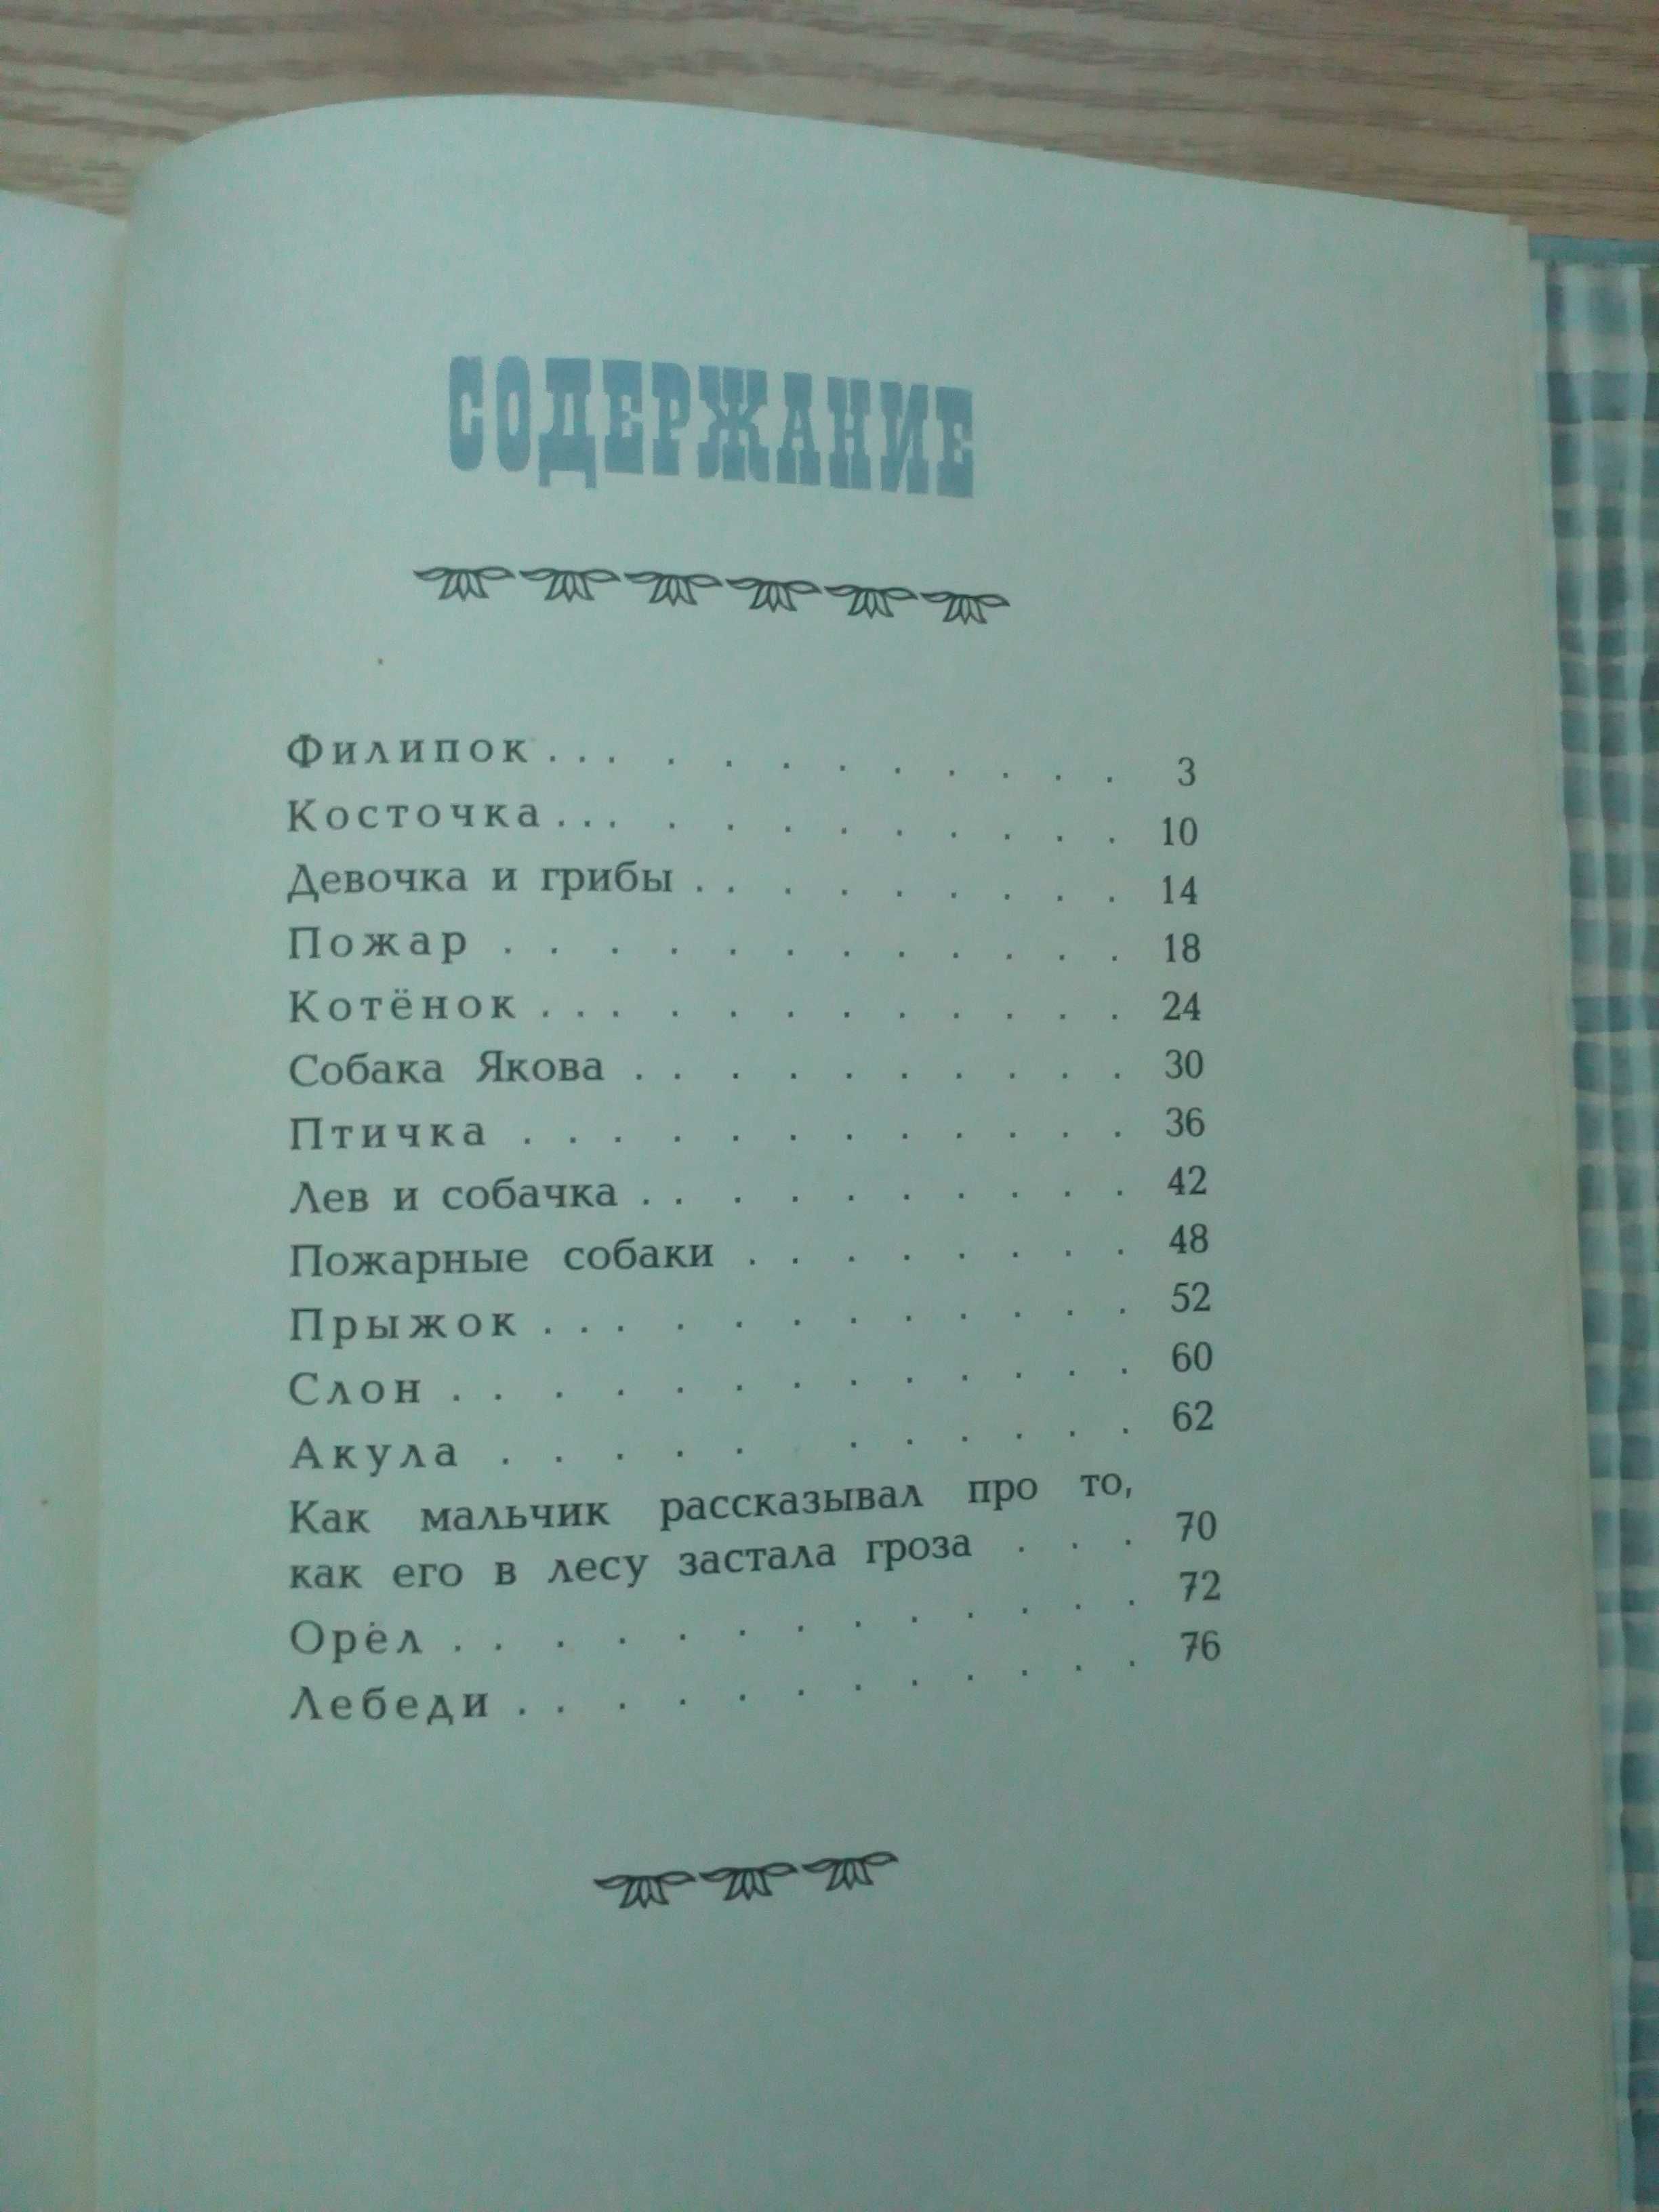 Л.Н.Толстой"Рассказы и были".Издательство"Малыш"1977 год.